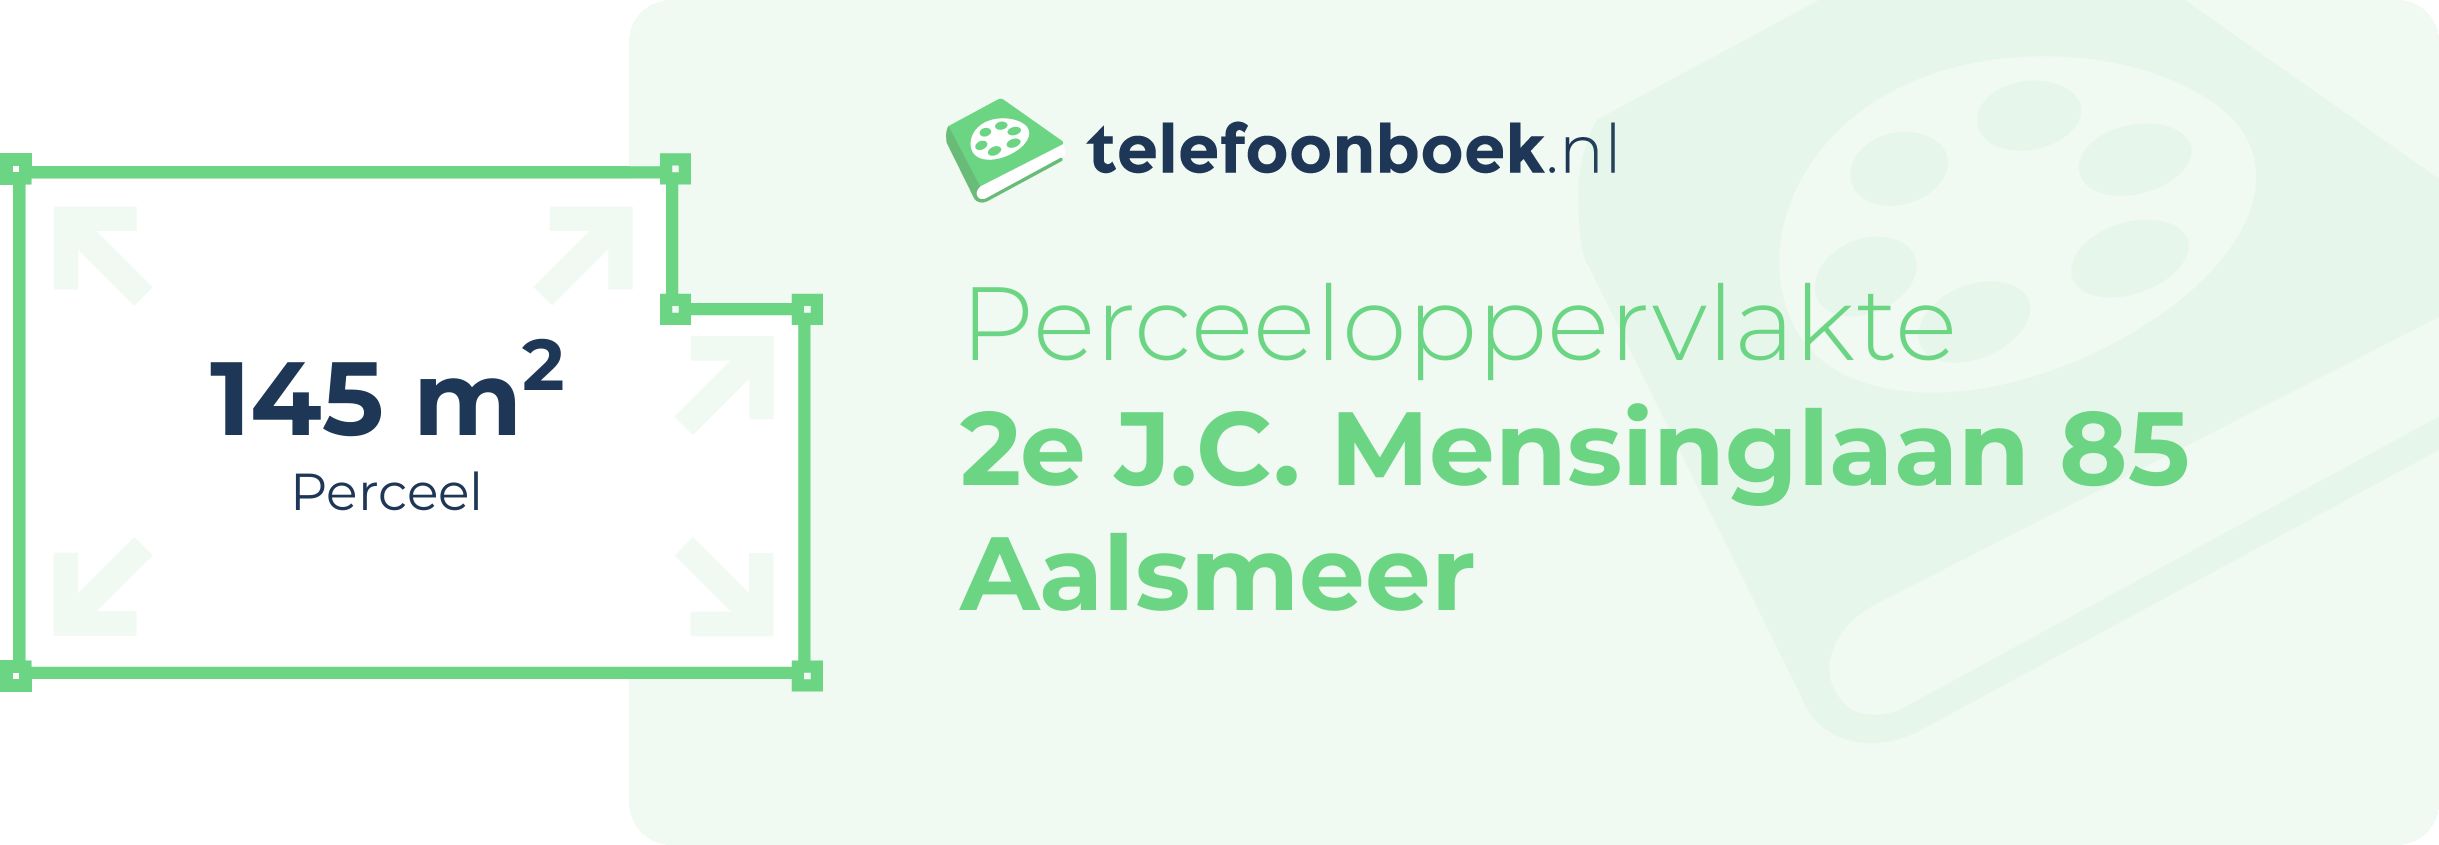 Perceeloppervlakte 2e J.C. Mensinglaan 85 Aalsmeer